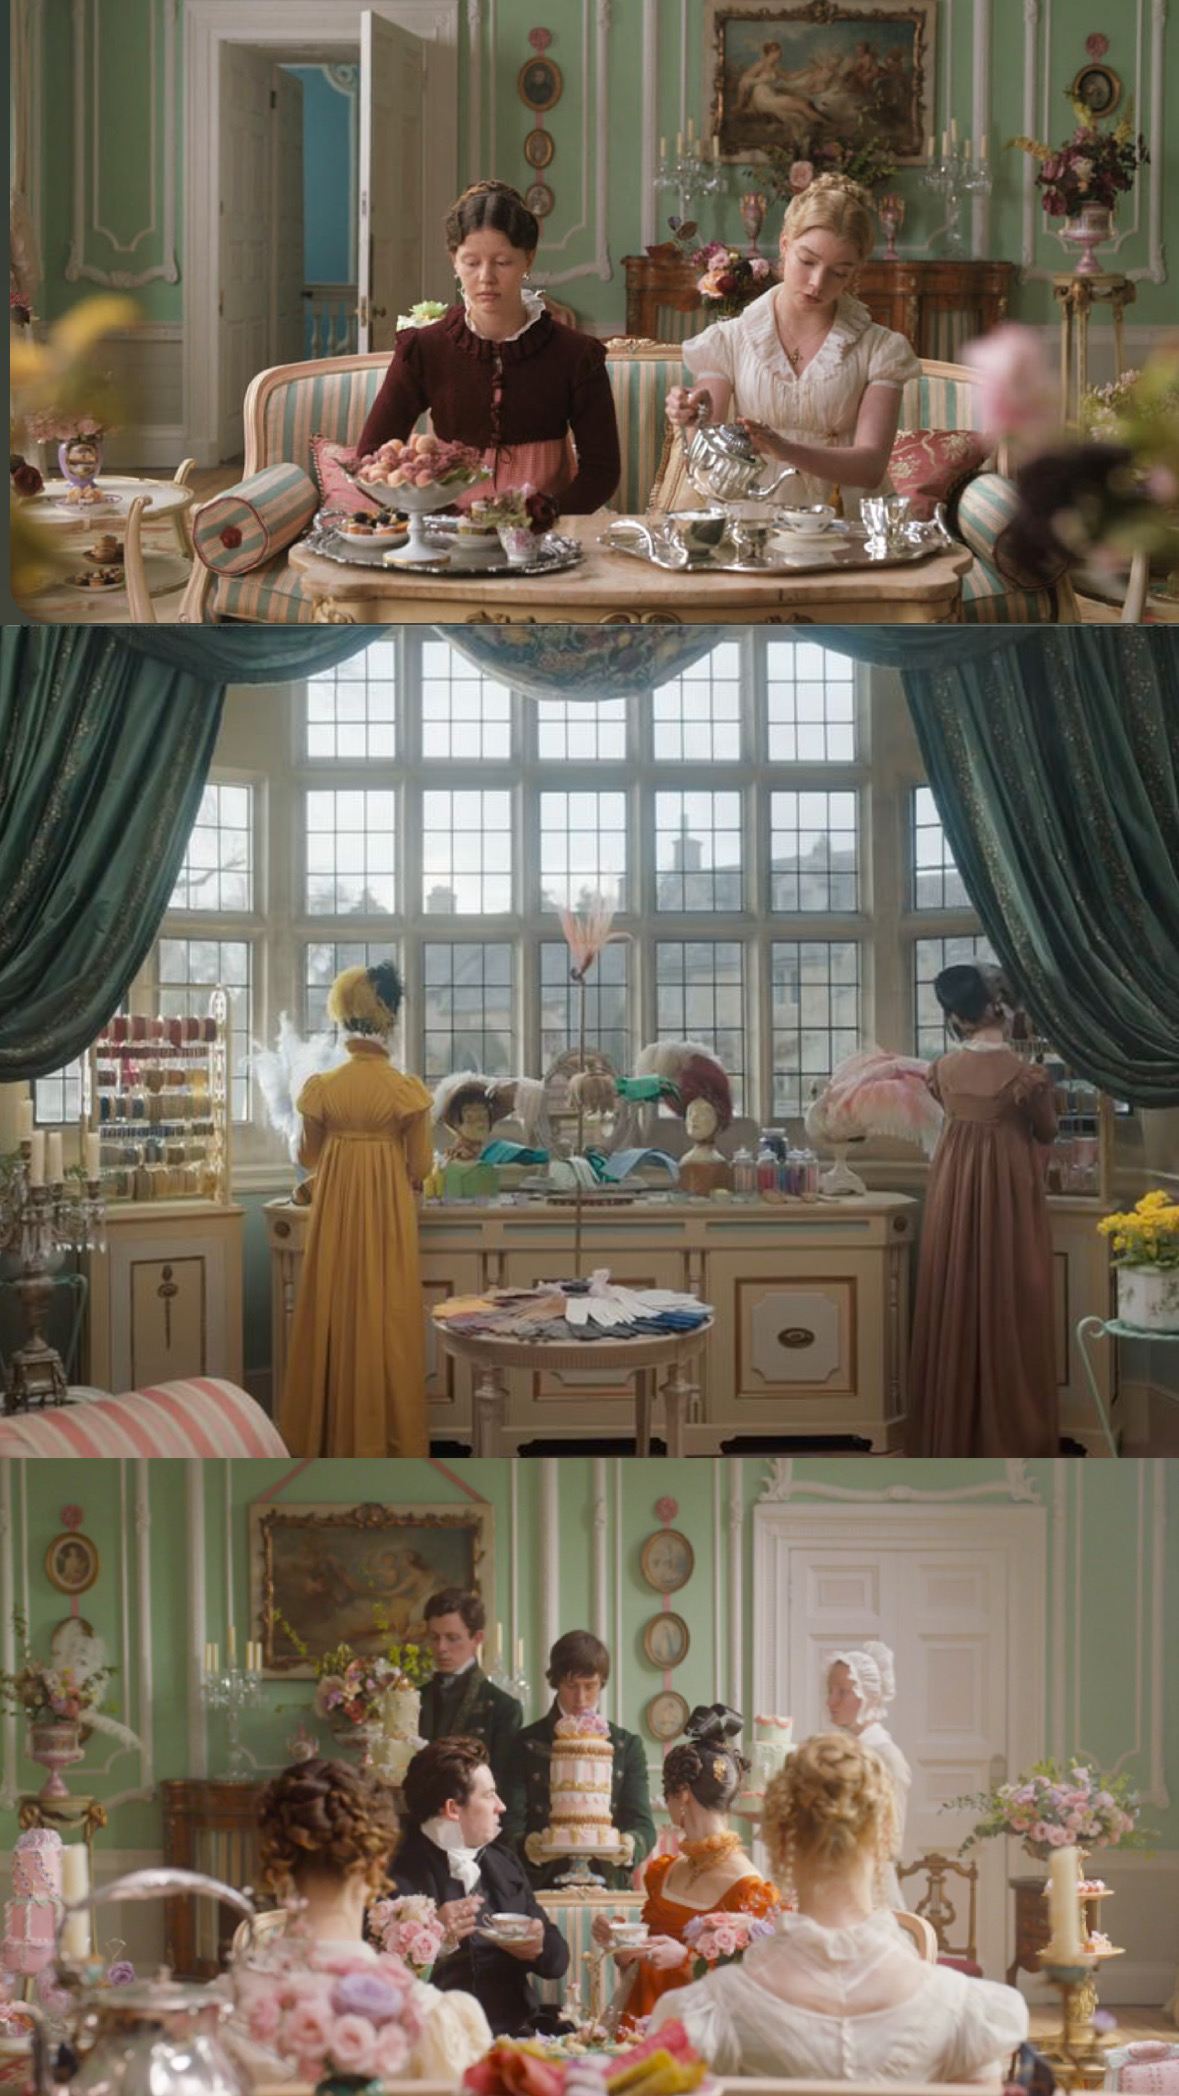 Emma movie set images color inspiration